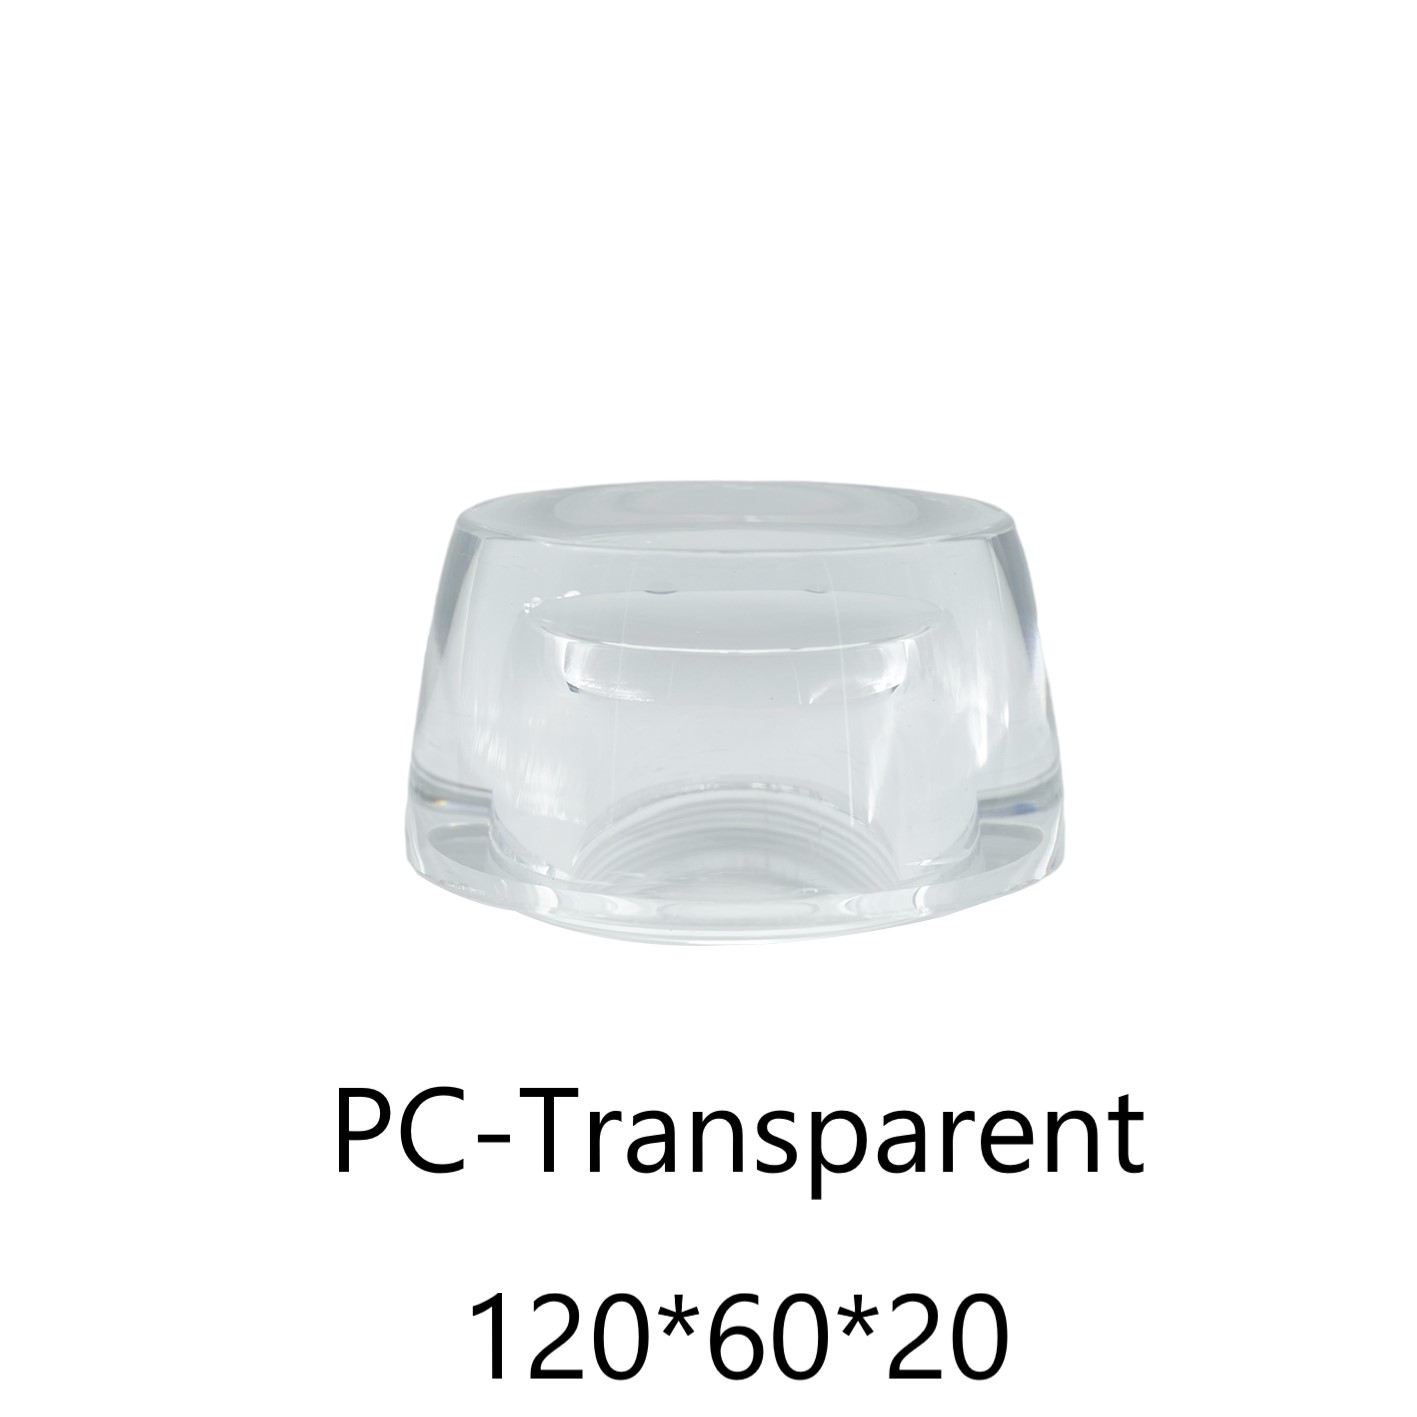 材質 : PC透明
尺寸 : 120*60*20